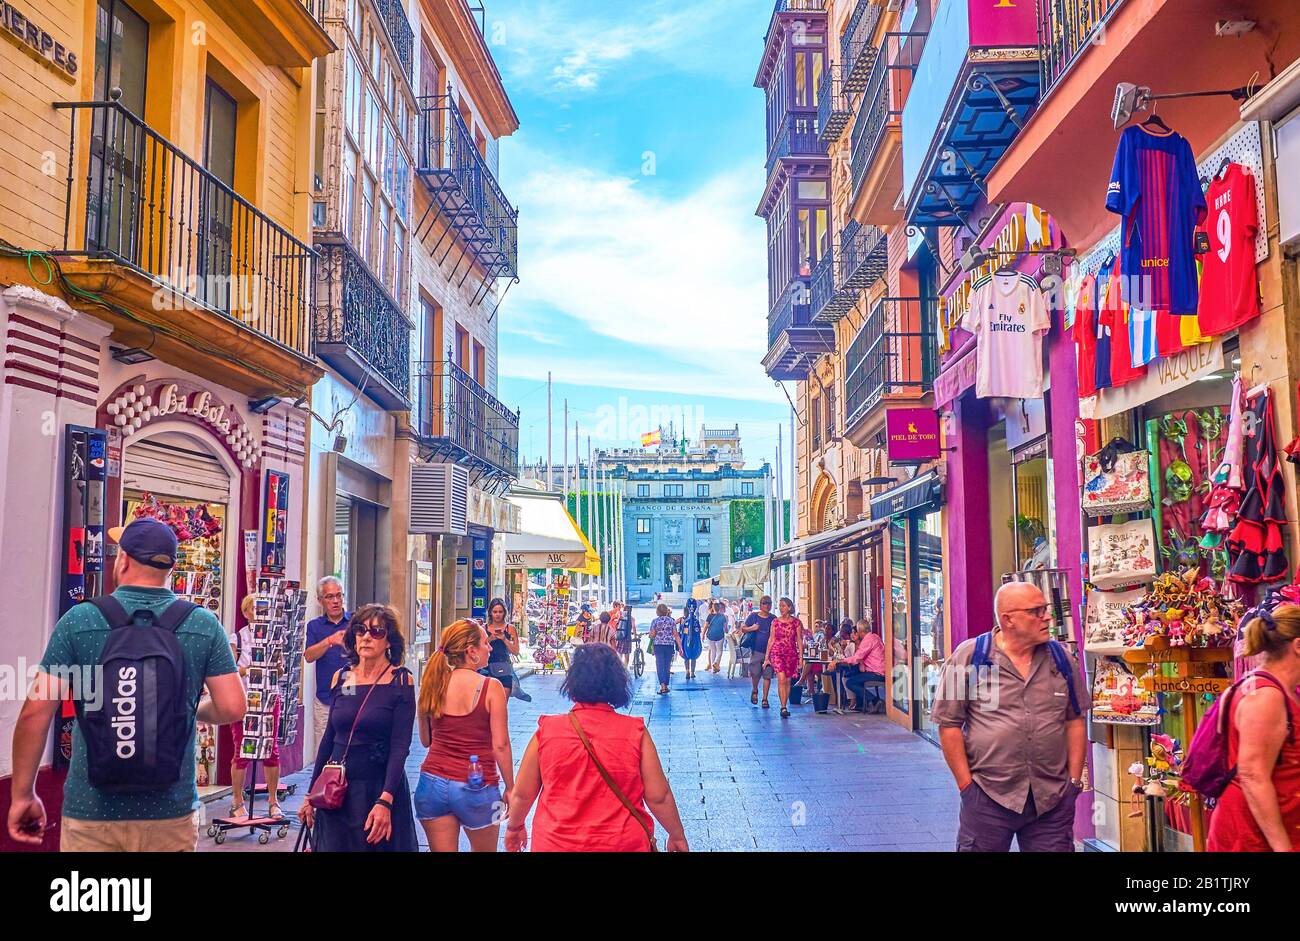 Spain andalusia seville sierpes fotografías imágenes de alta resolución -